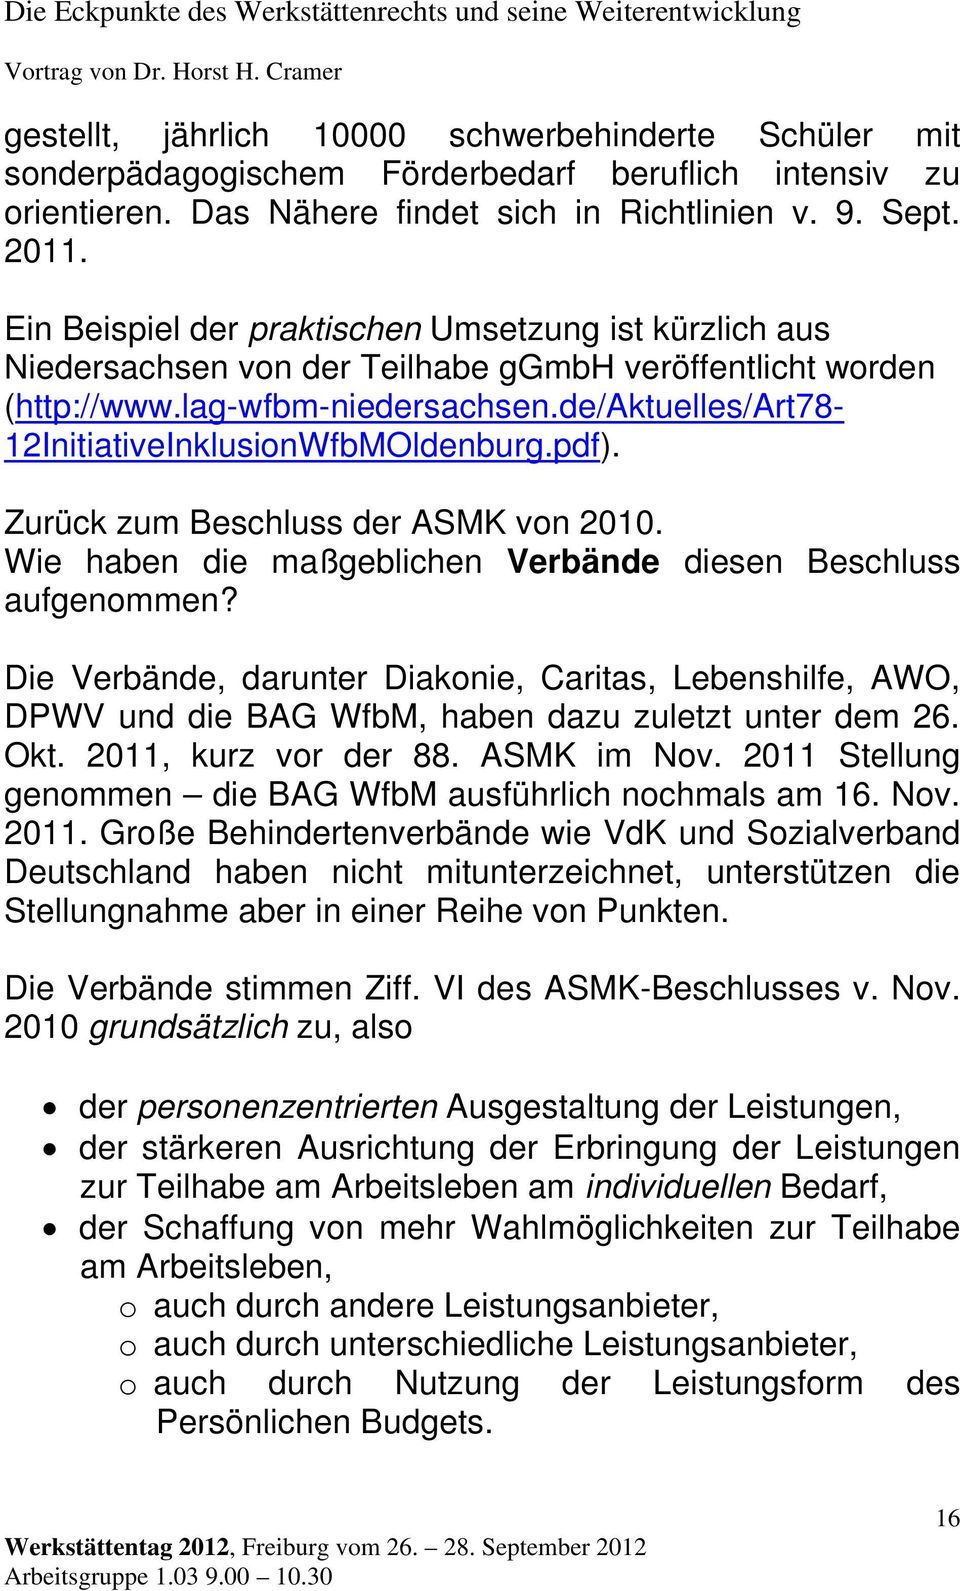 de/aktuelles/art78-12initiativeinklusionwfbmoldenburg.pdf). Zurück zum Beschluss der ASMK von 2010. Wie haben die maßgeblichen Verbände diesen Beschluss aufgenommen?